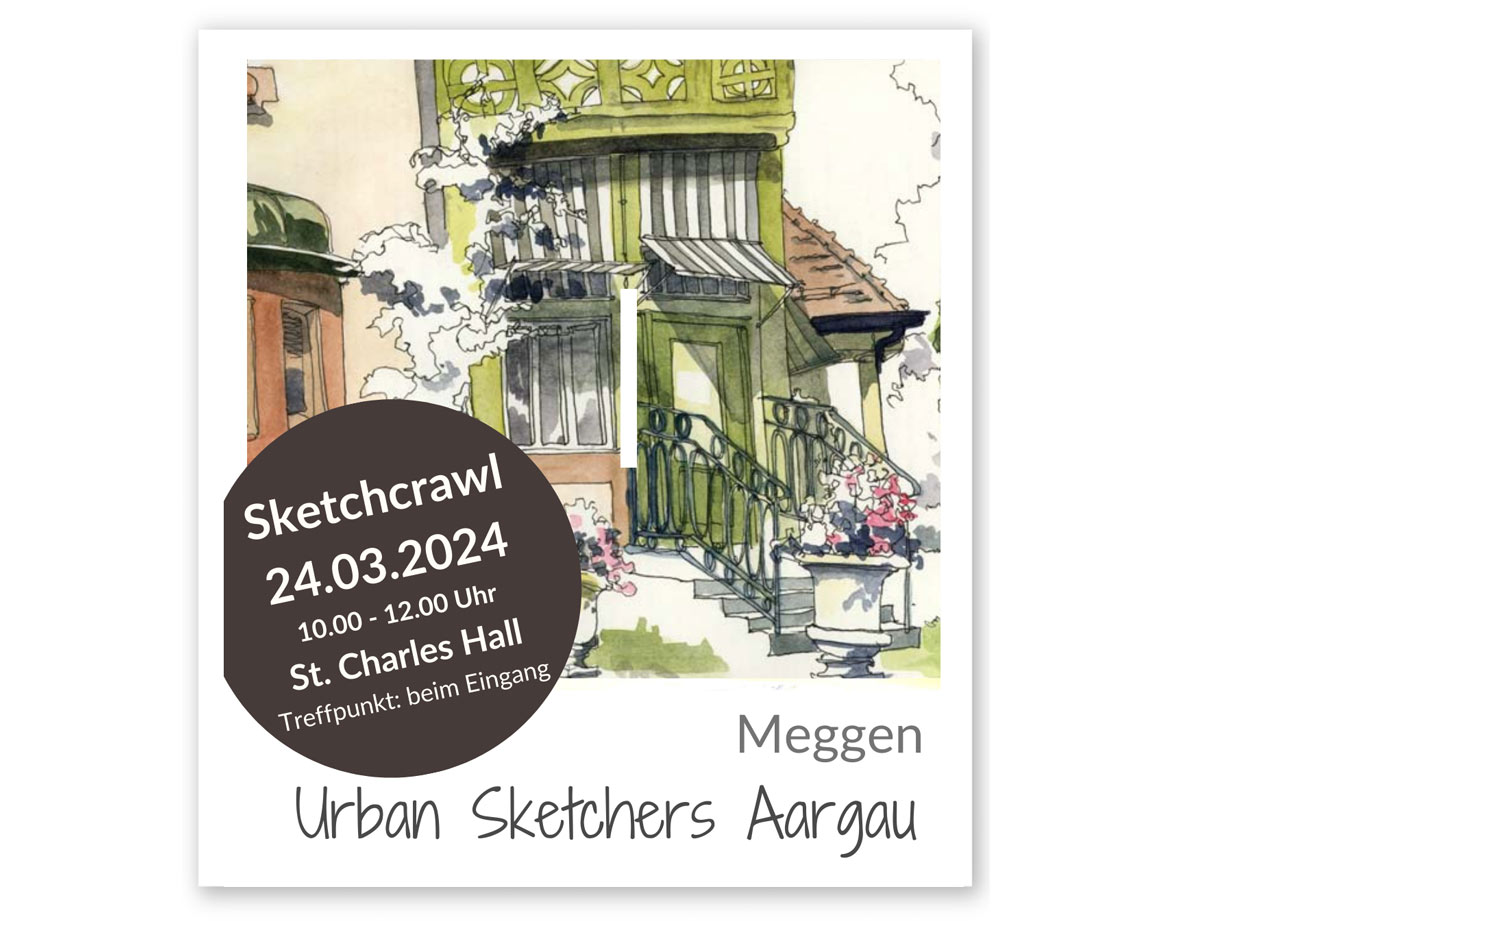 Sketchcrawl Meggen Luzern, Aargauer Urmansketchers